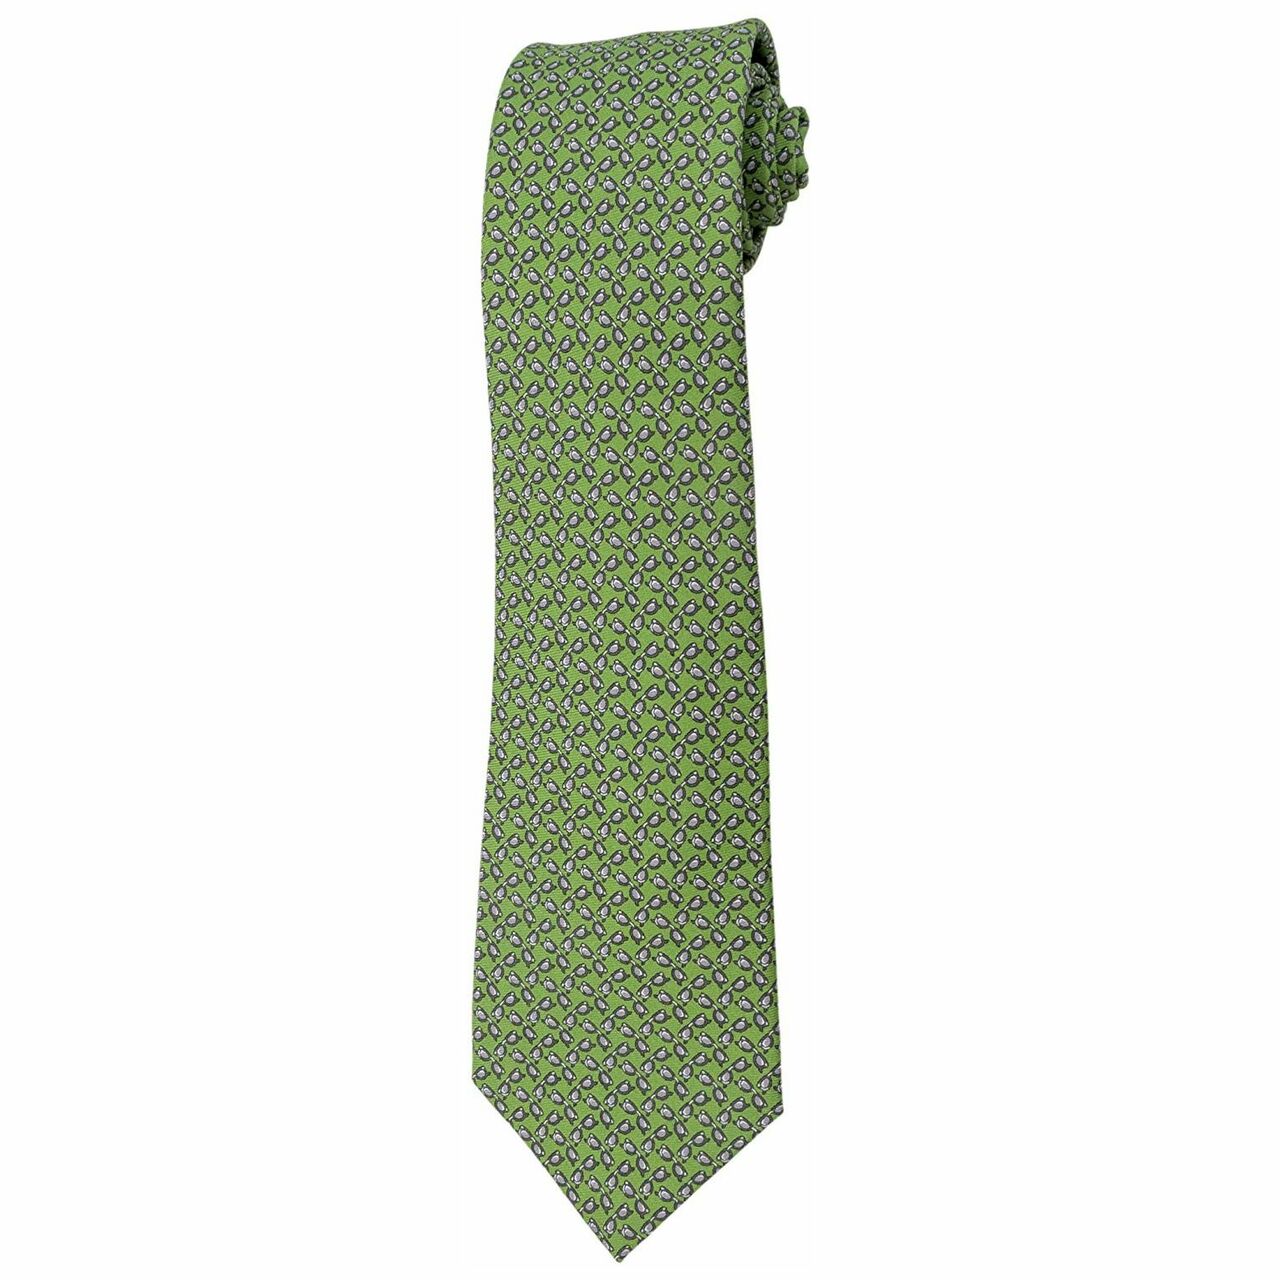 Premium Italian Silk Green Necktie stretched